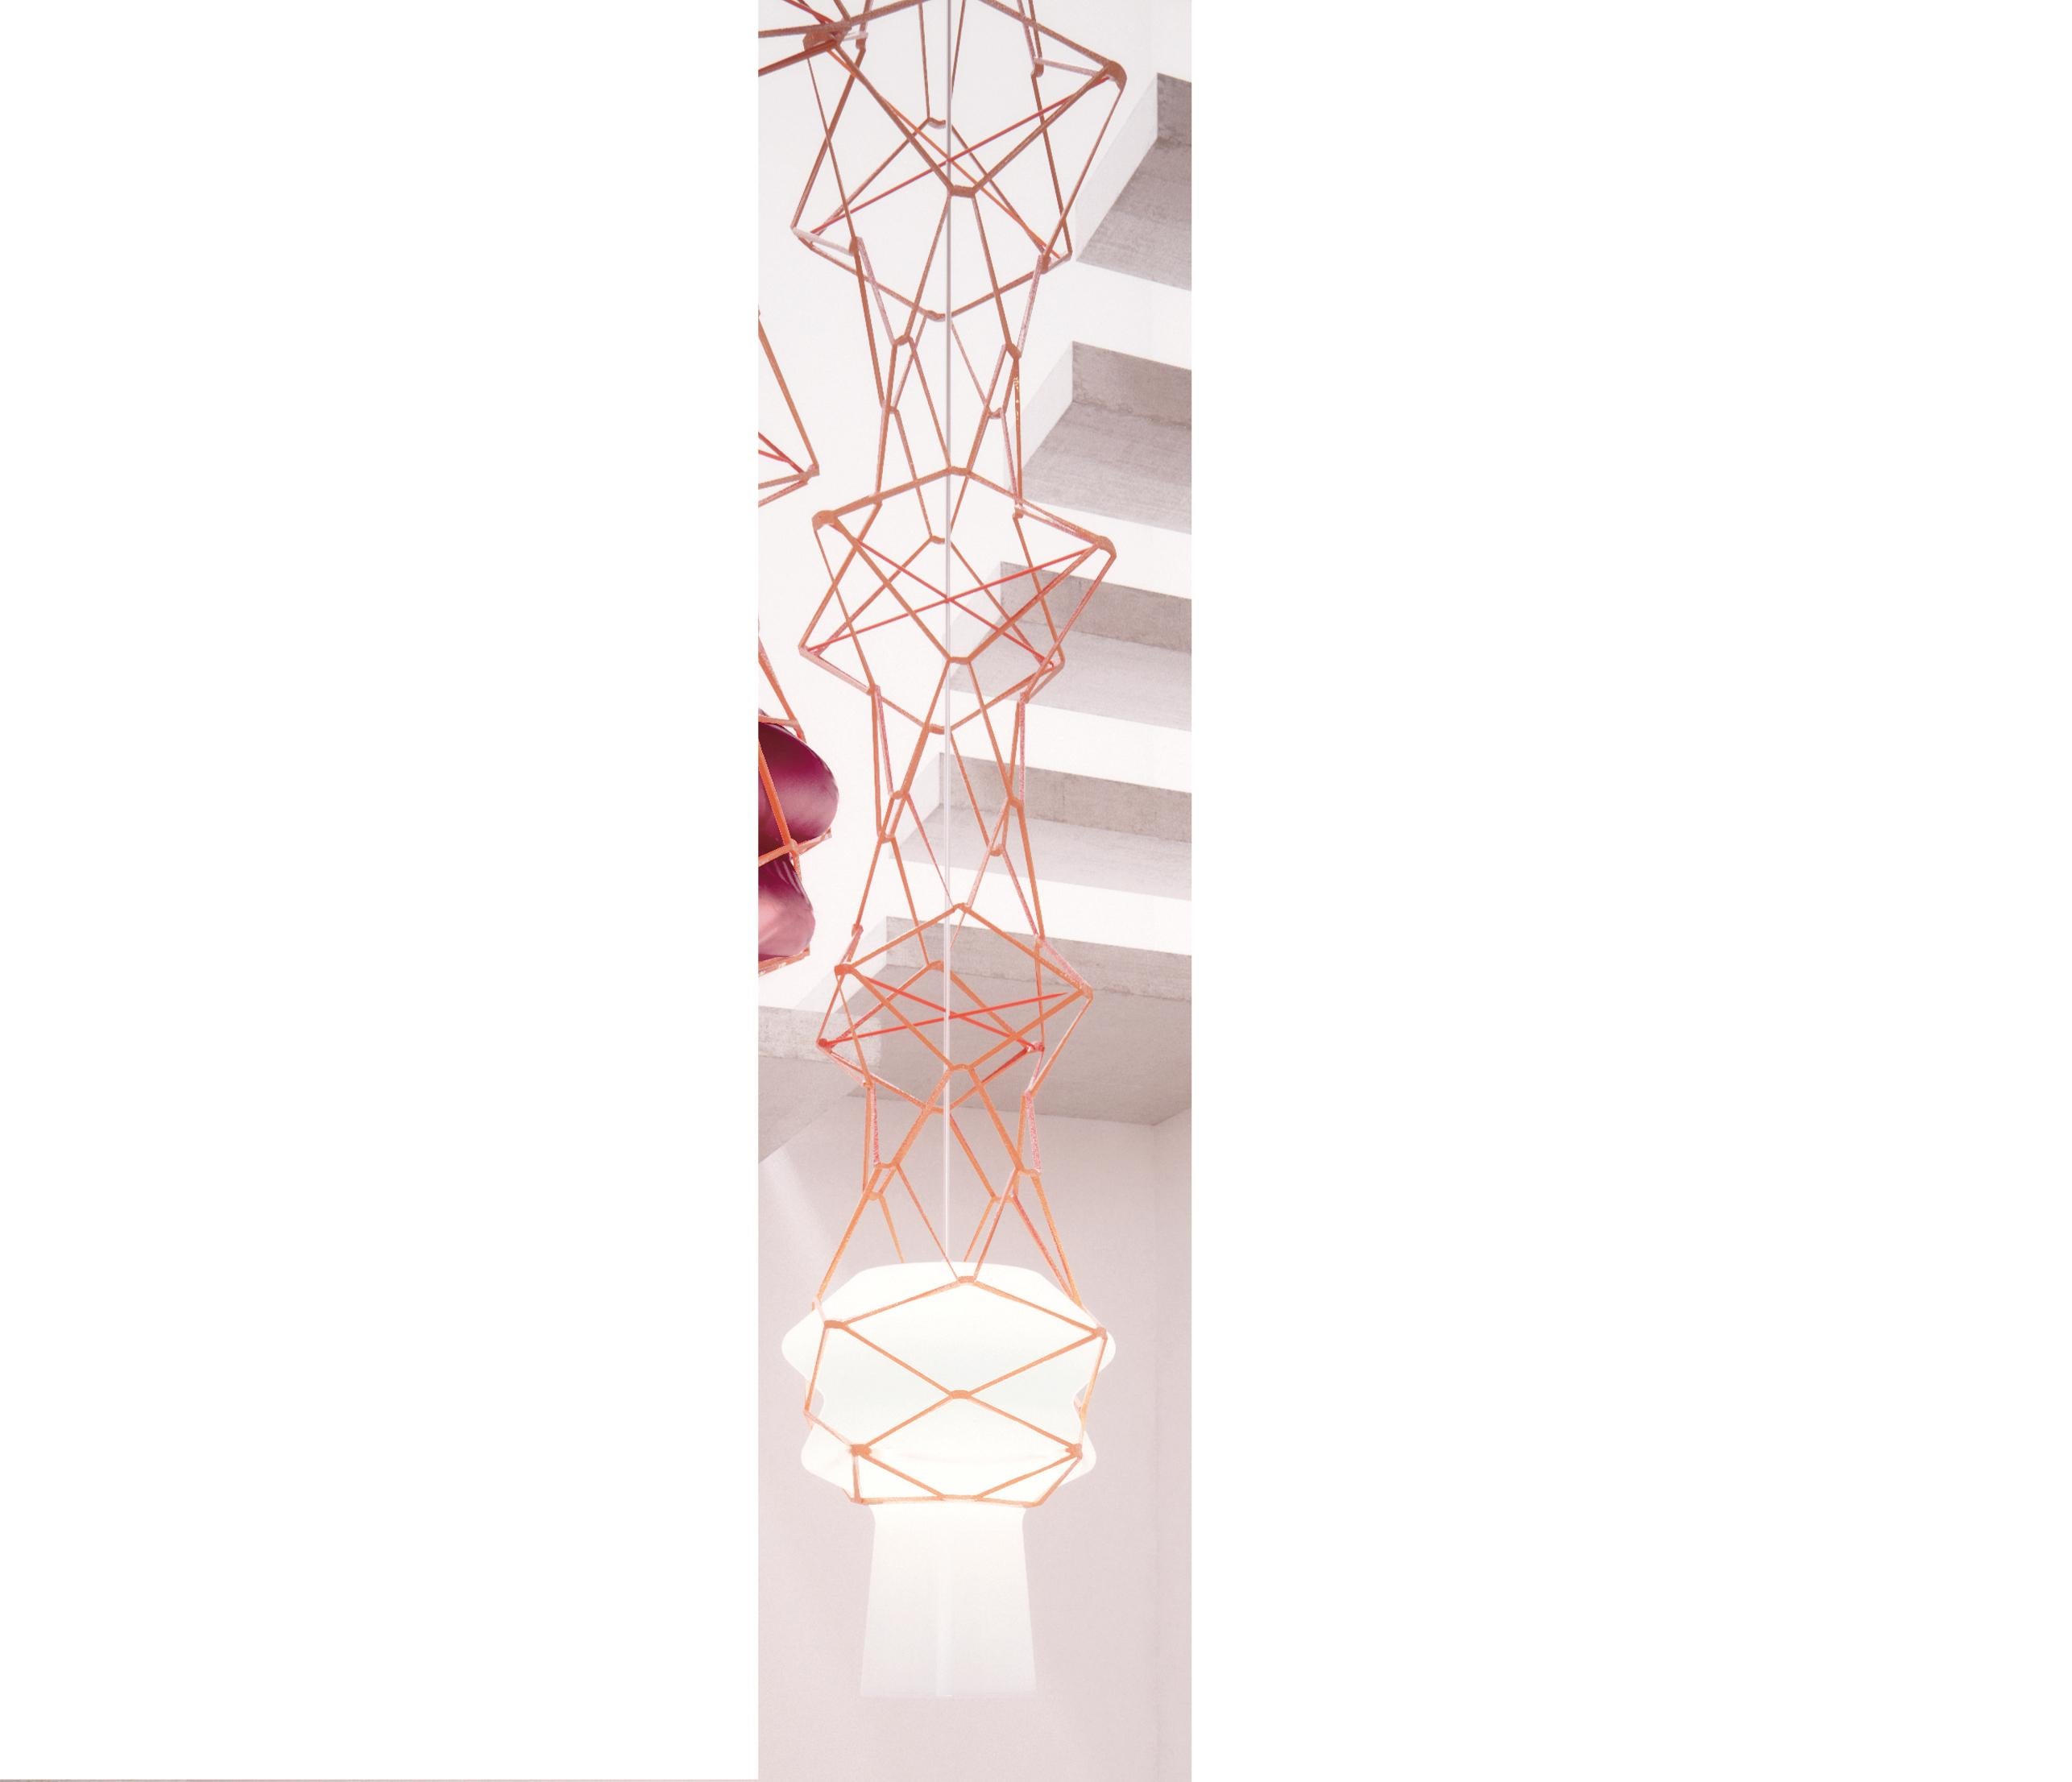 La suspension Stelle Filanti, conçue par l'Atelier Oï et fabriquée par Venini, présente une structure en cuir. Disponible en trois couleurs différentes. Utilisation intérieure uniquement.

Dimensions : Ø 30 cm, H 220 cm.